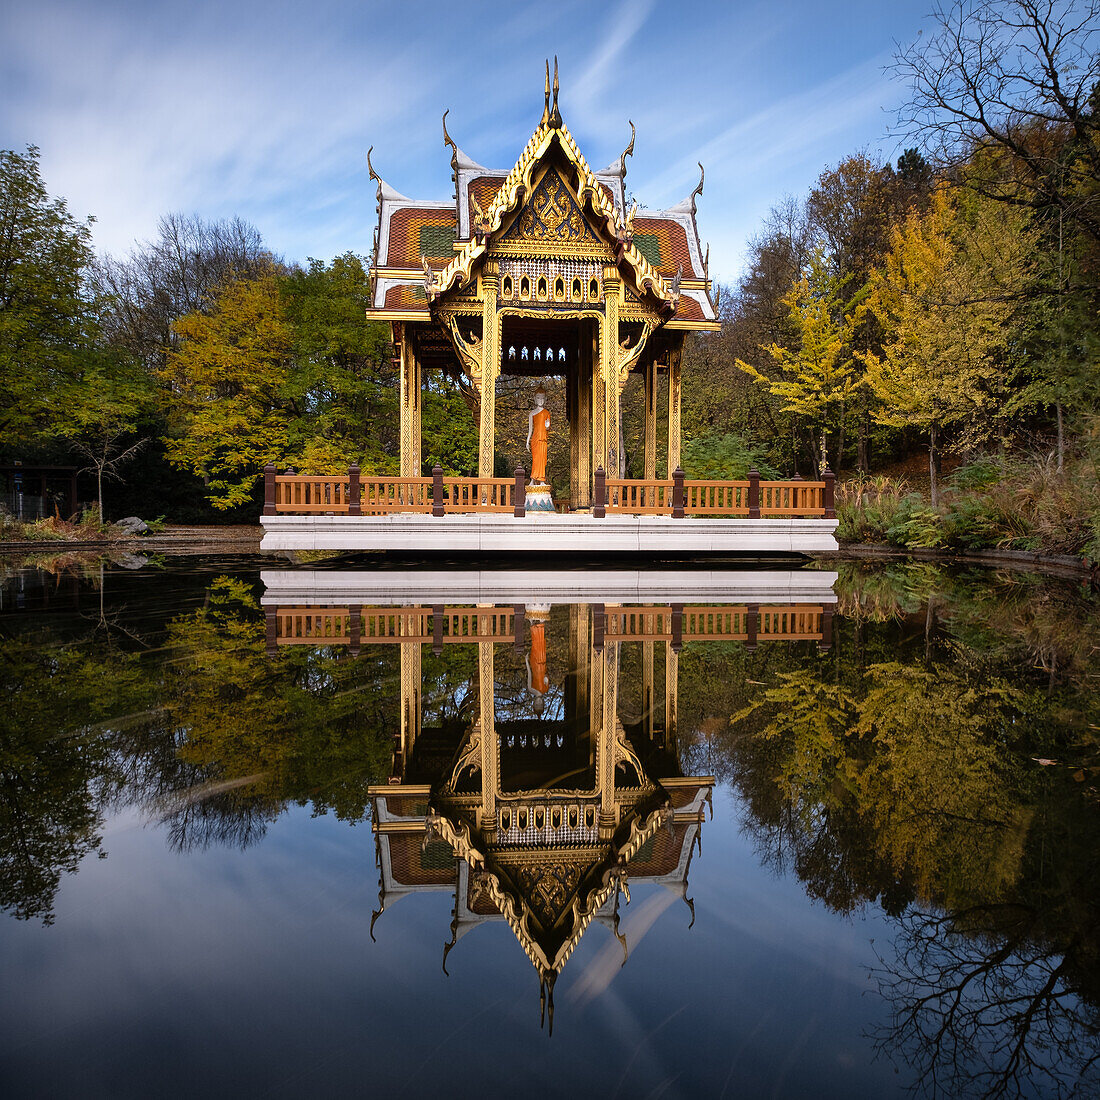 Thailändische Sala mit Buddha Statue in einem Wasserbecken,  Westpark, München, Oberbayern, Bayern, Deutschland, Europa